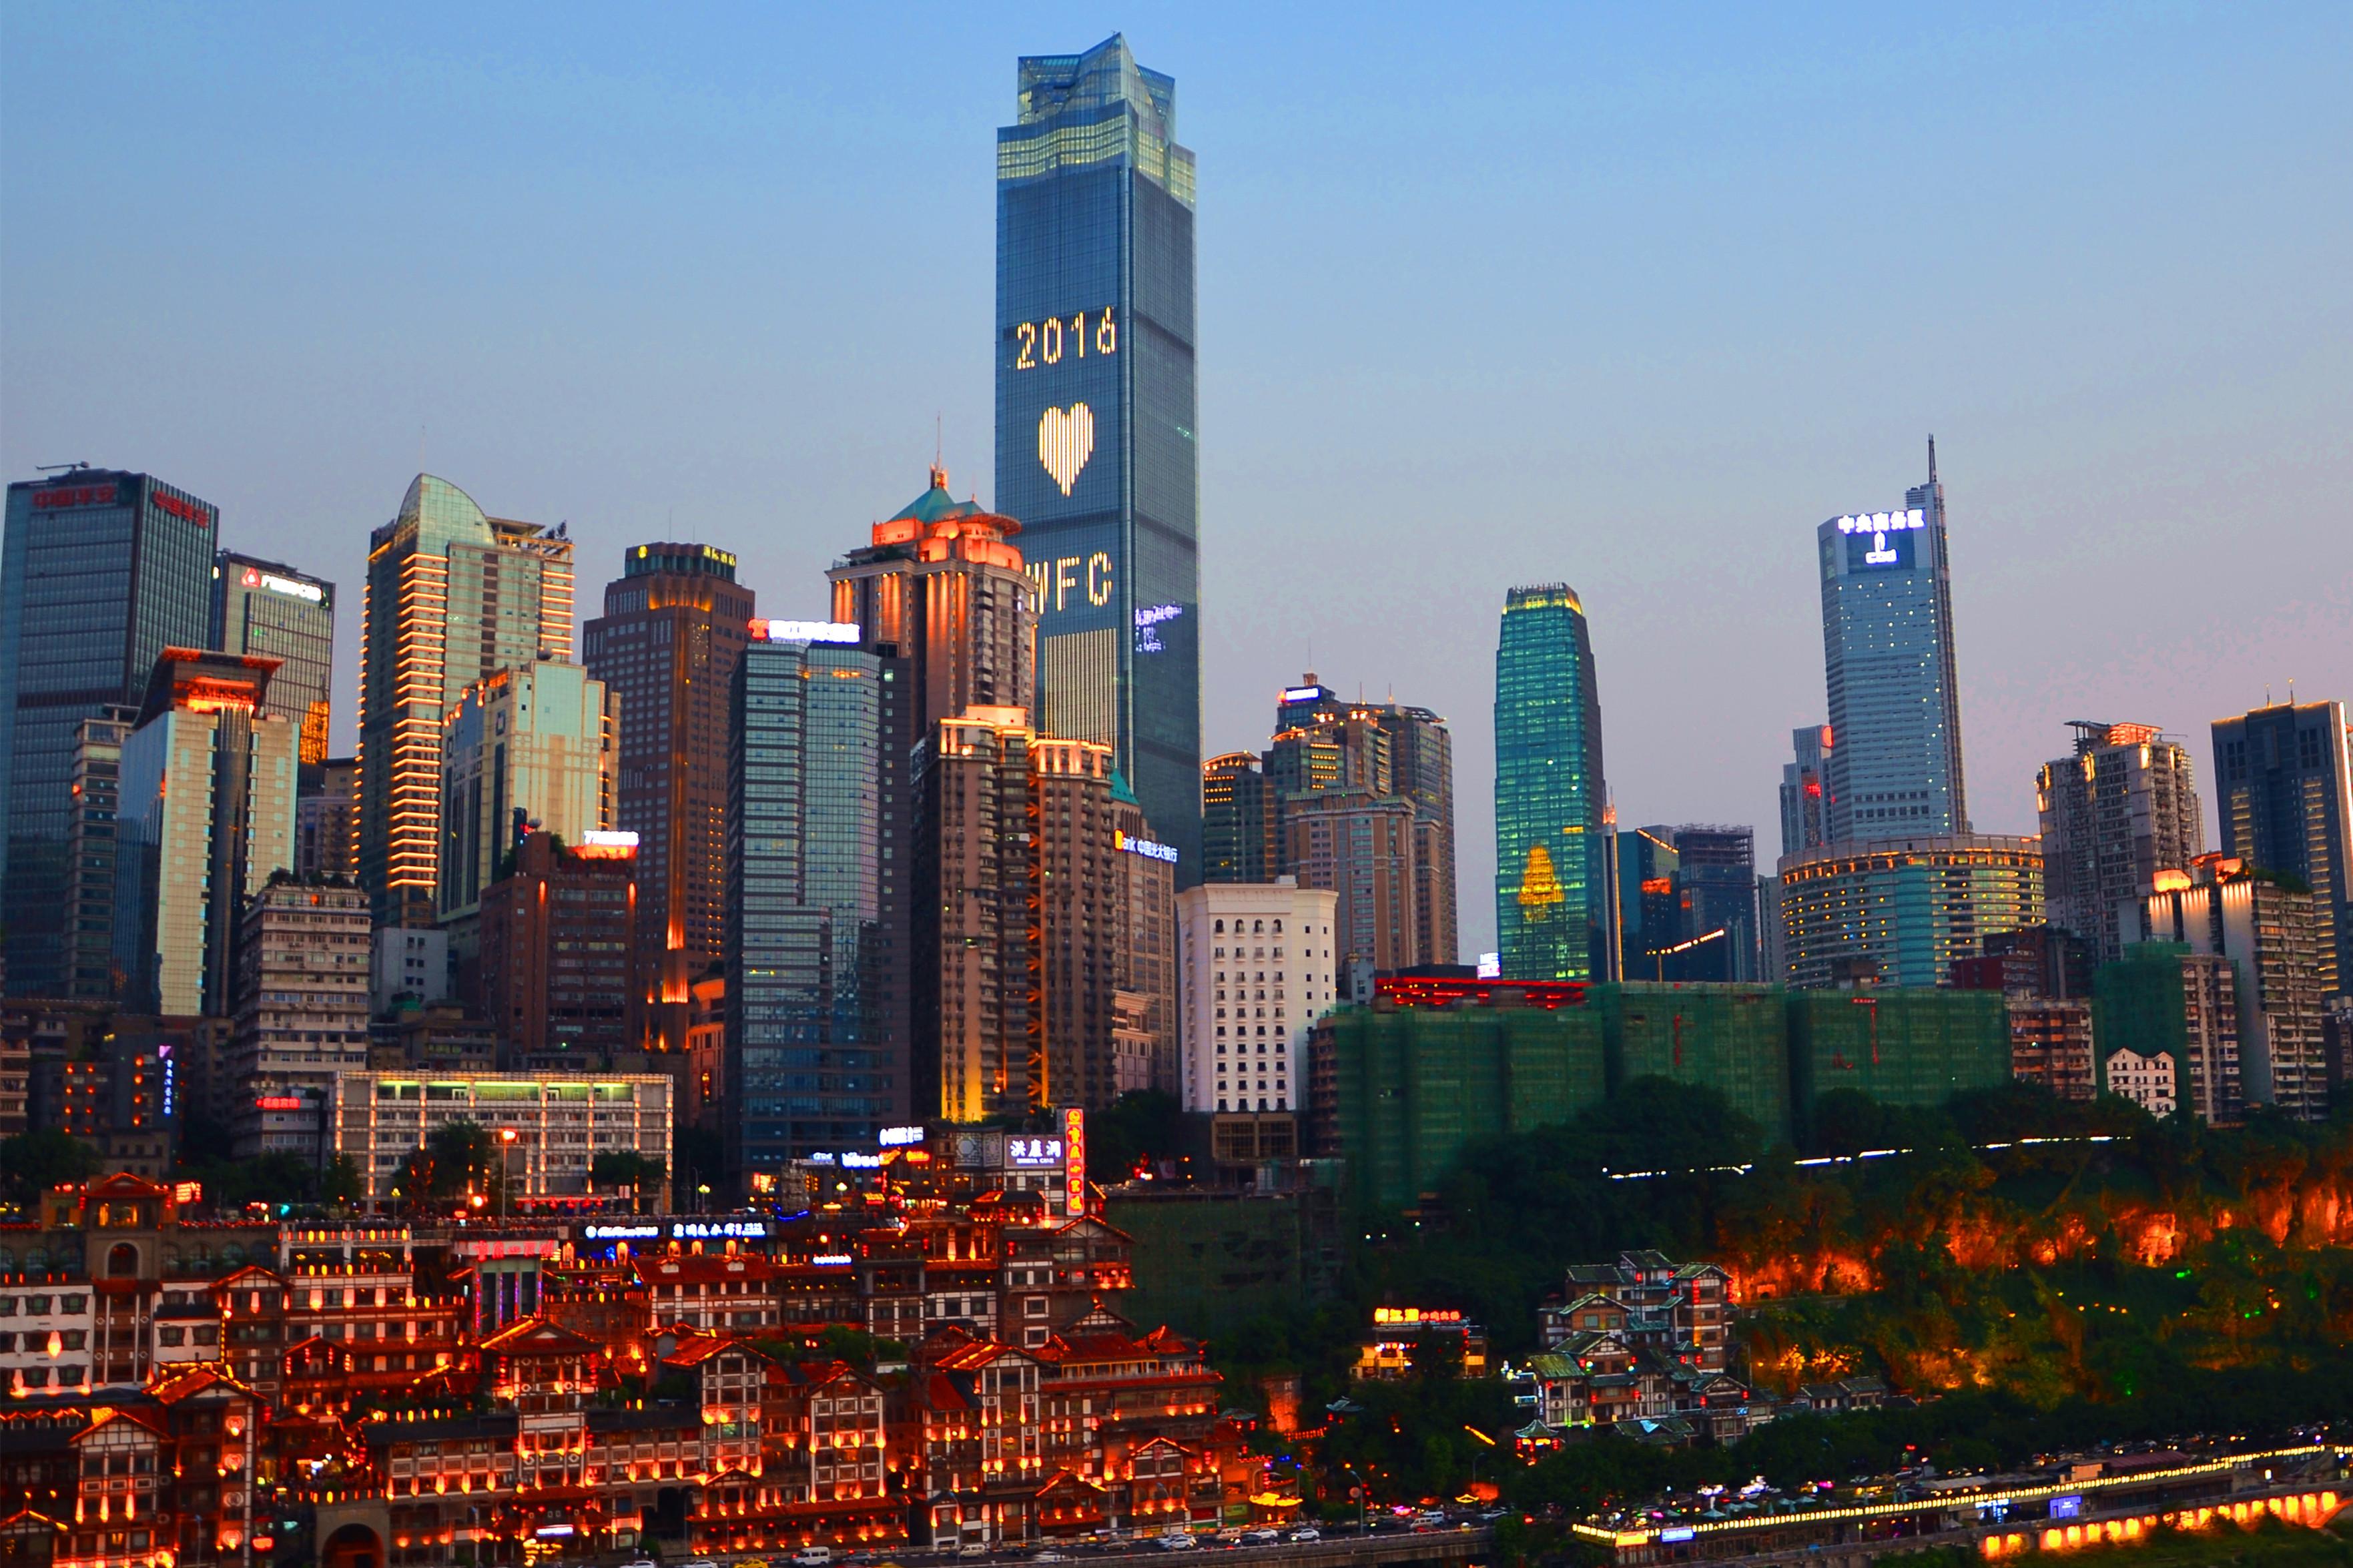 重庆城市3d模型 数字城市 地形 沙盘 鸟瞰-cg模型免费下载-CG99